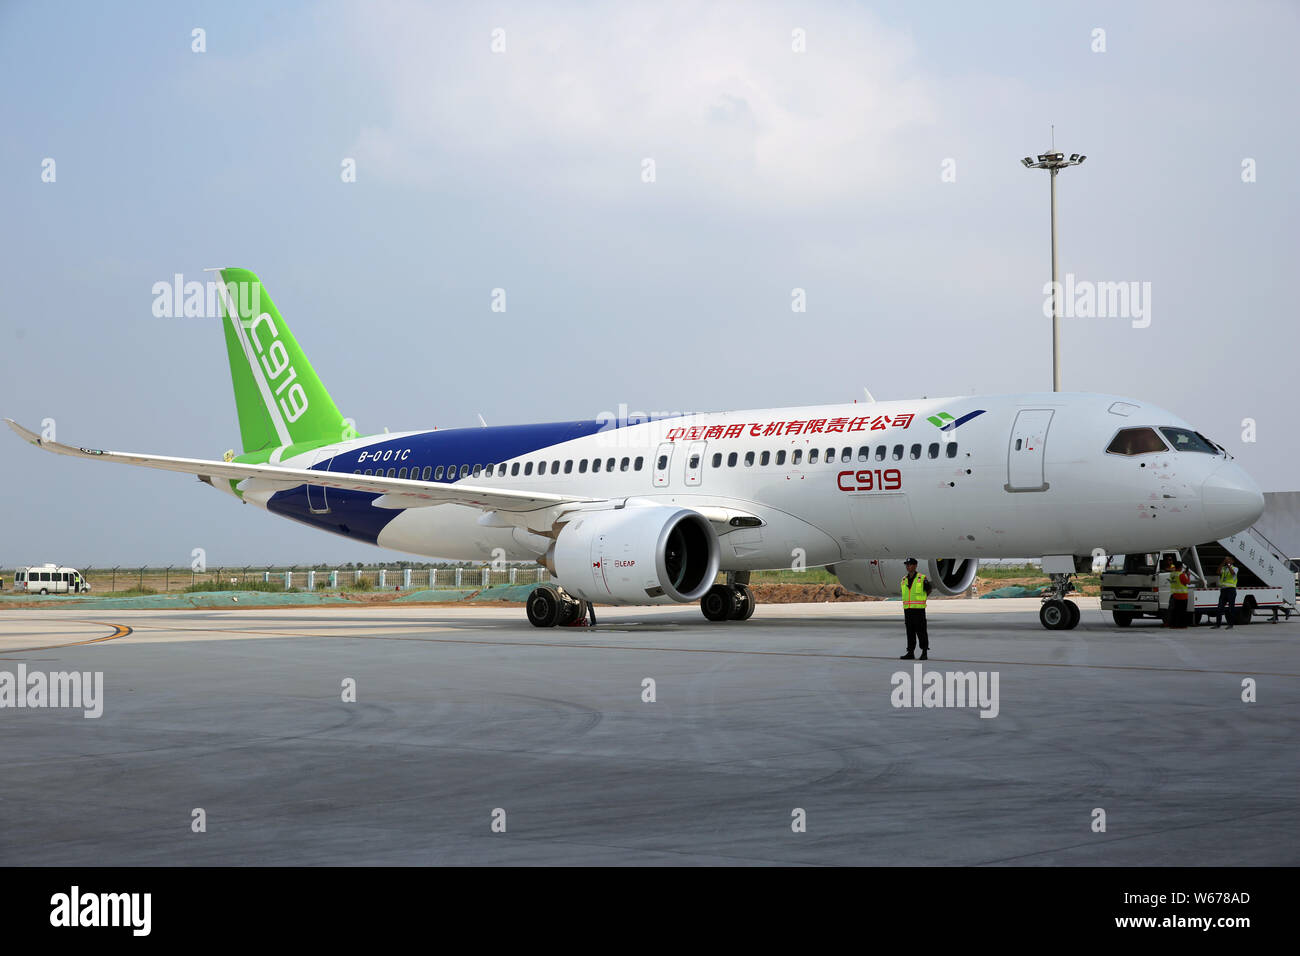 Deuxième de la Chine au pays développés de grands avions de transport de passagers C919 de COMAC (Commercial Aircraft Corporation of China) est représenté après l'atterrissage à Shucheng Banque D'Images